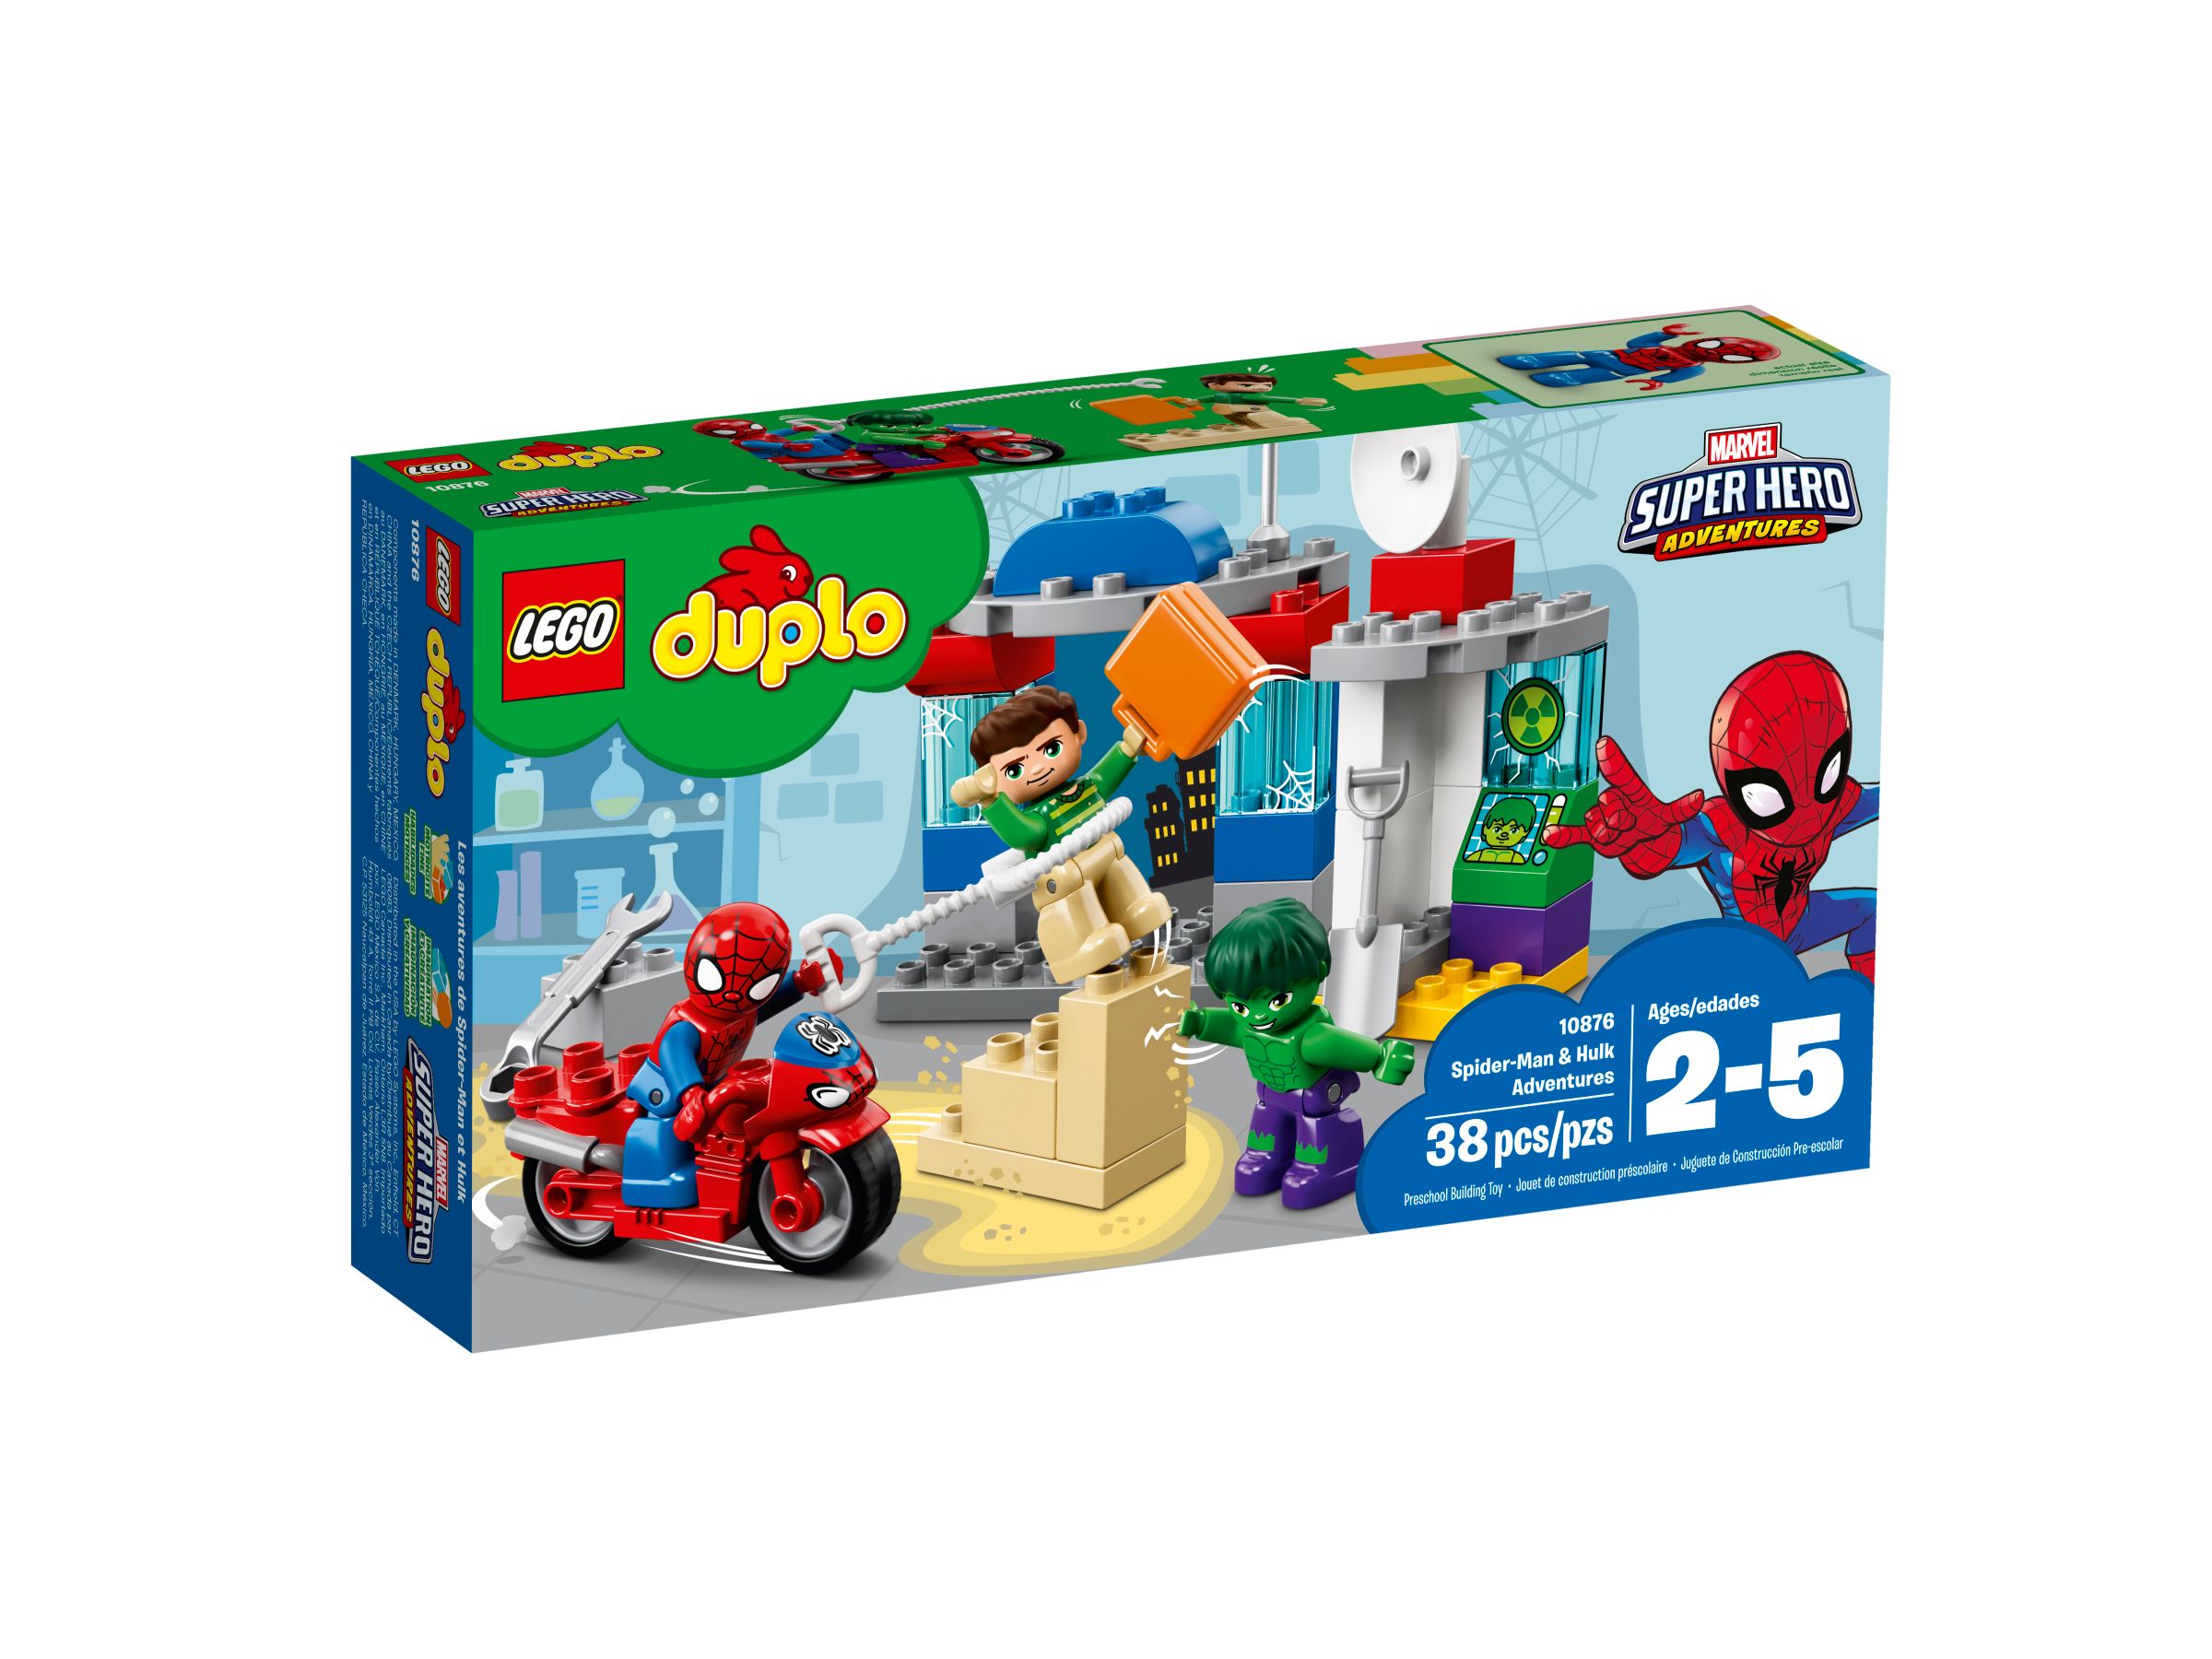 LEGO Duplo 10876 Die Abenteuer von Spider-Man und Hulk LEGO_10876_alt1.jpg